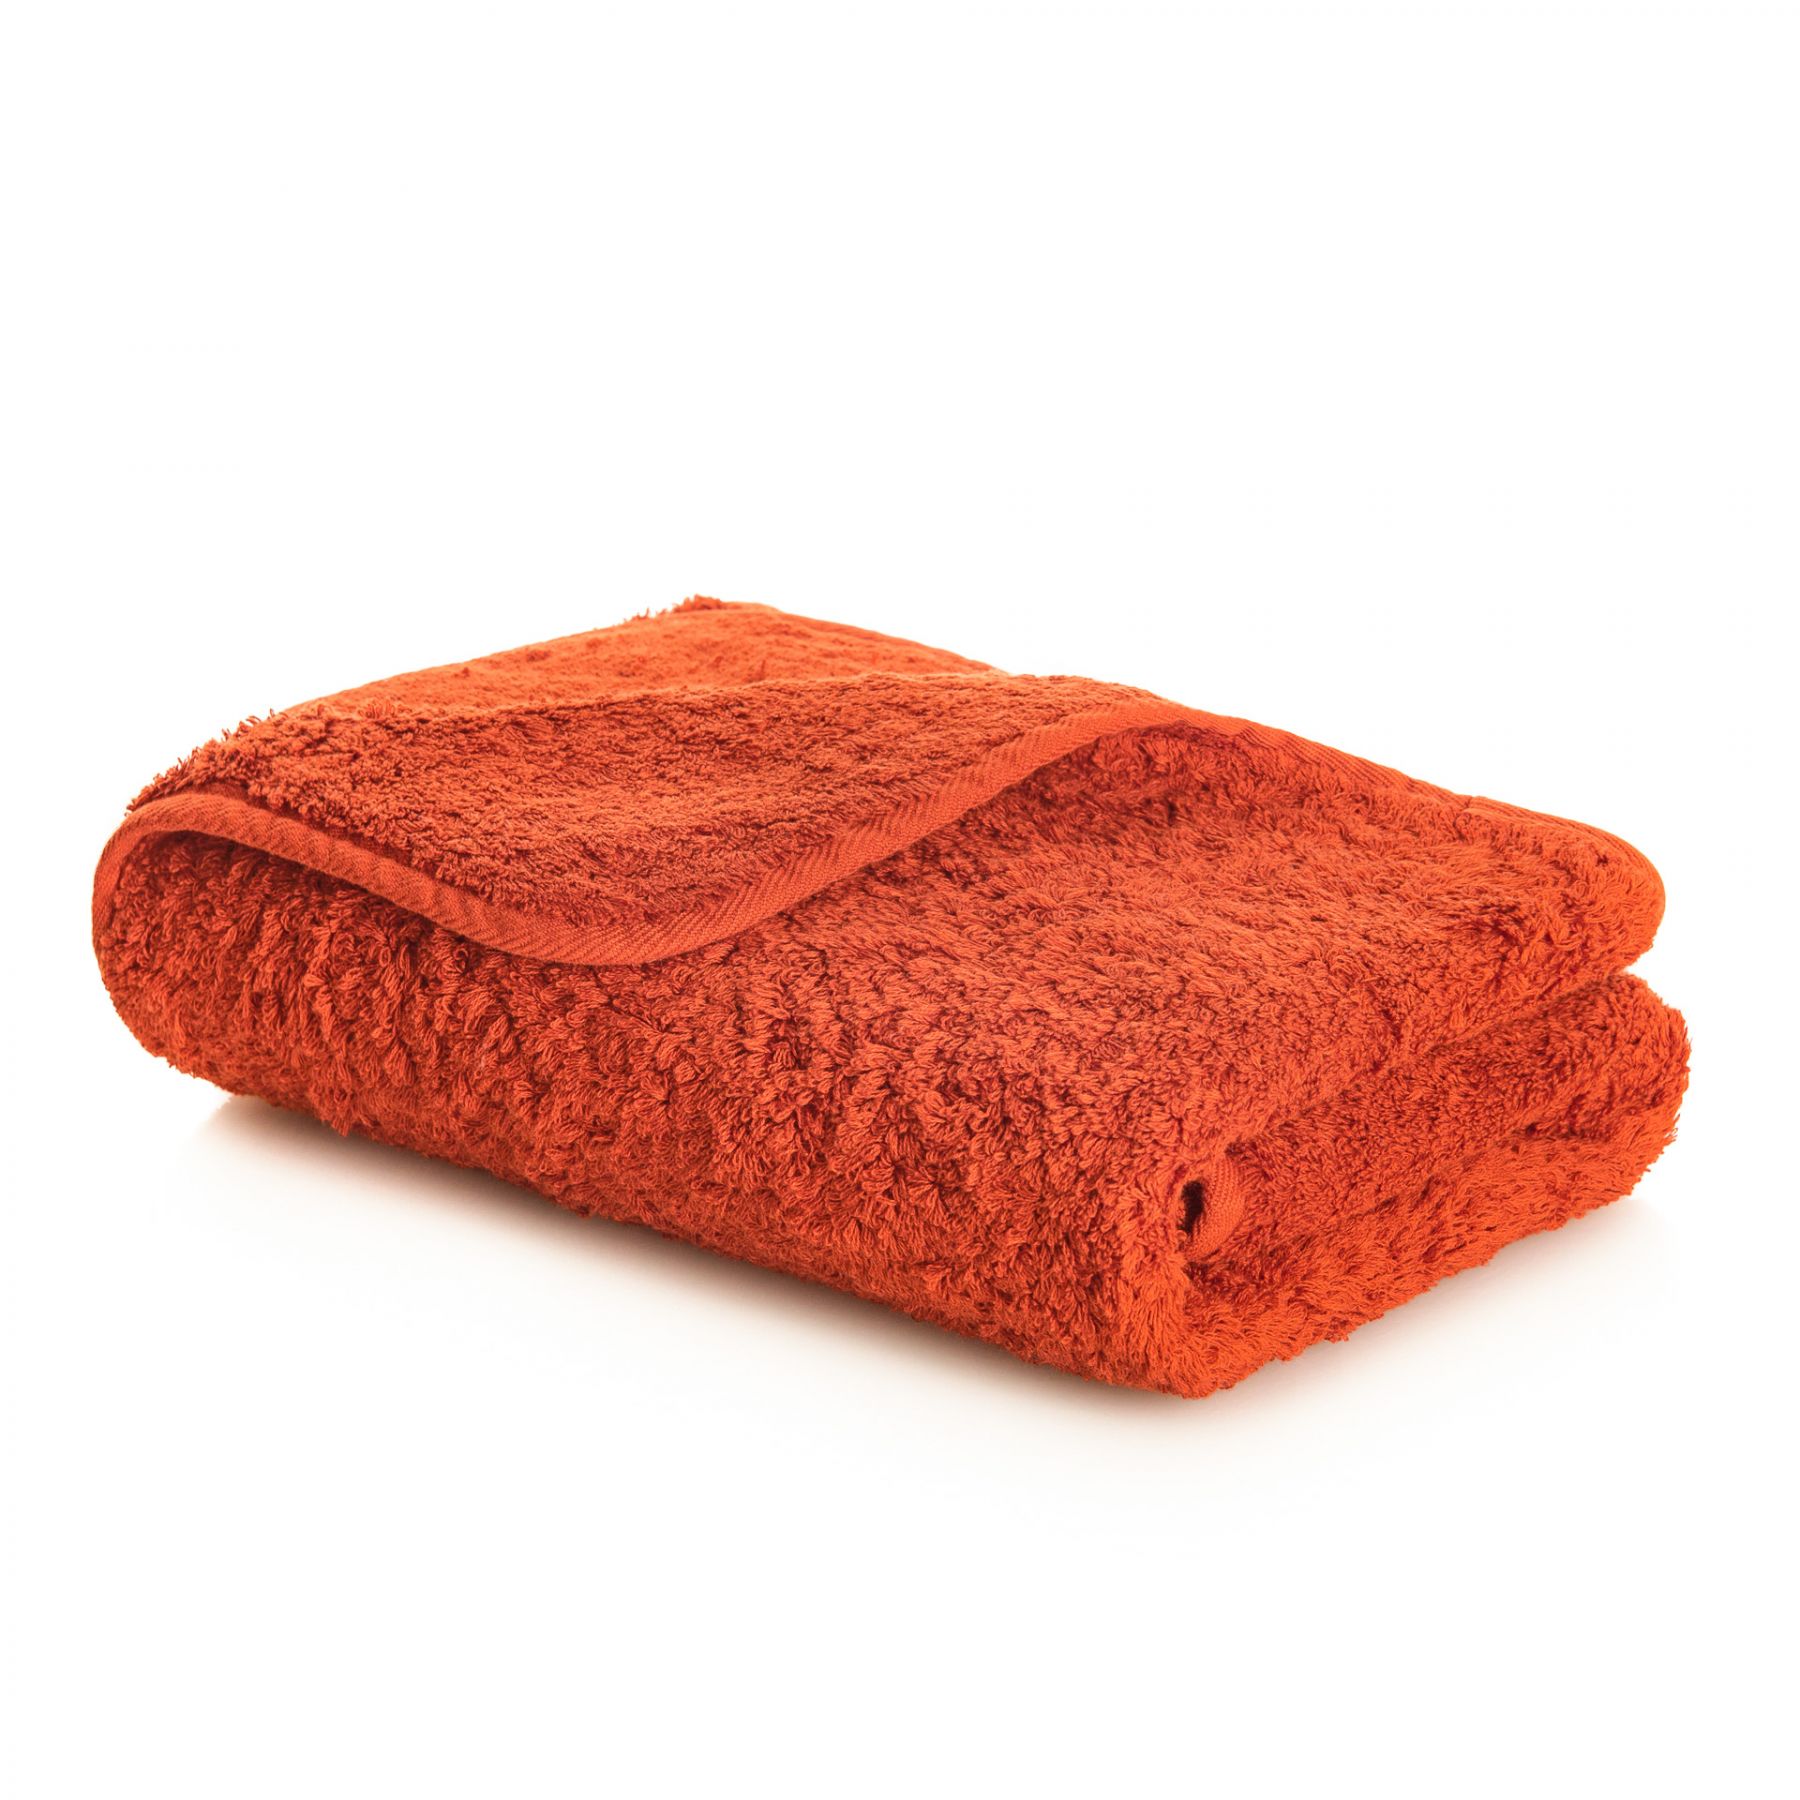 Элитное полотенце Egoist Range Spicy ☞ Размер: 70 x 140 см